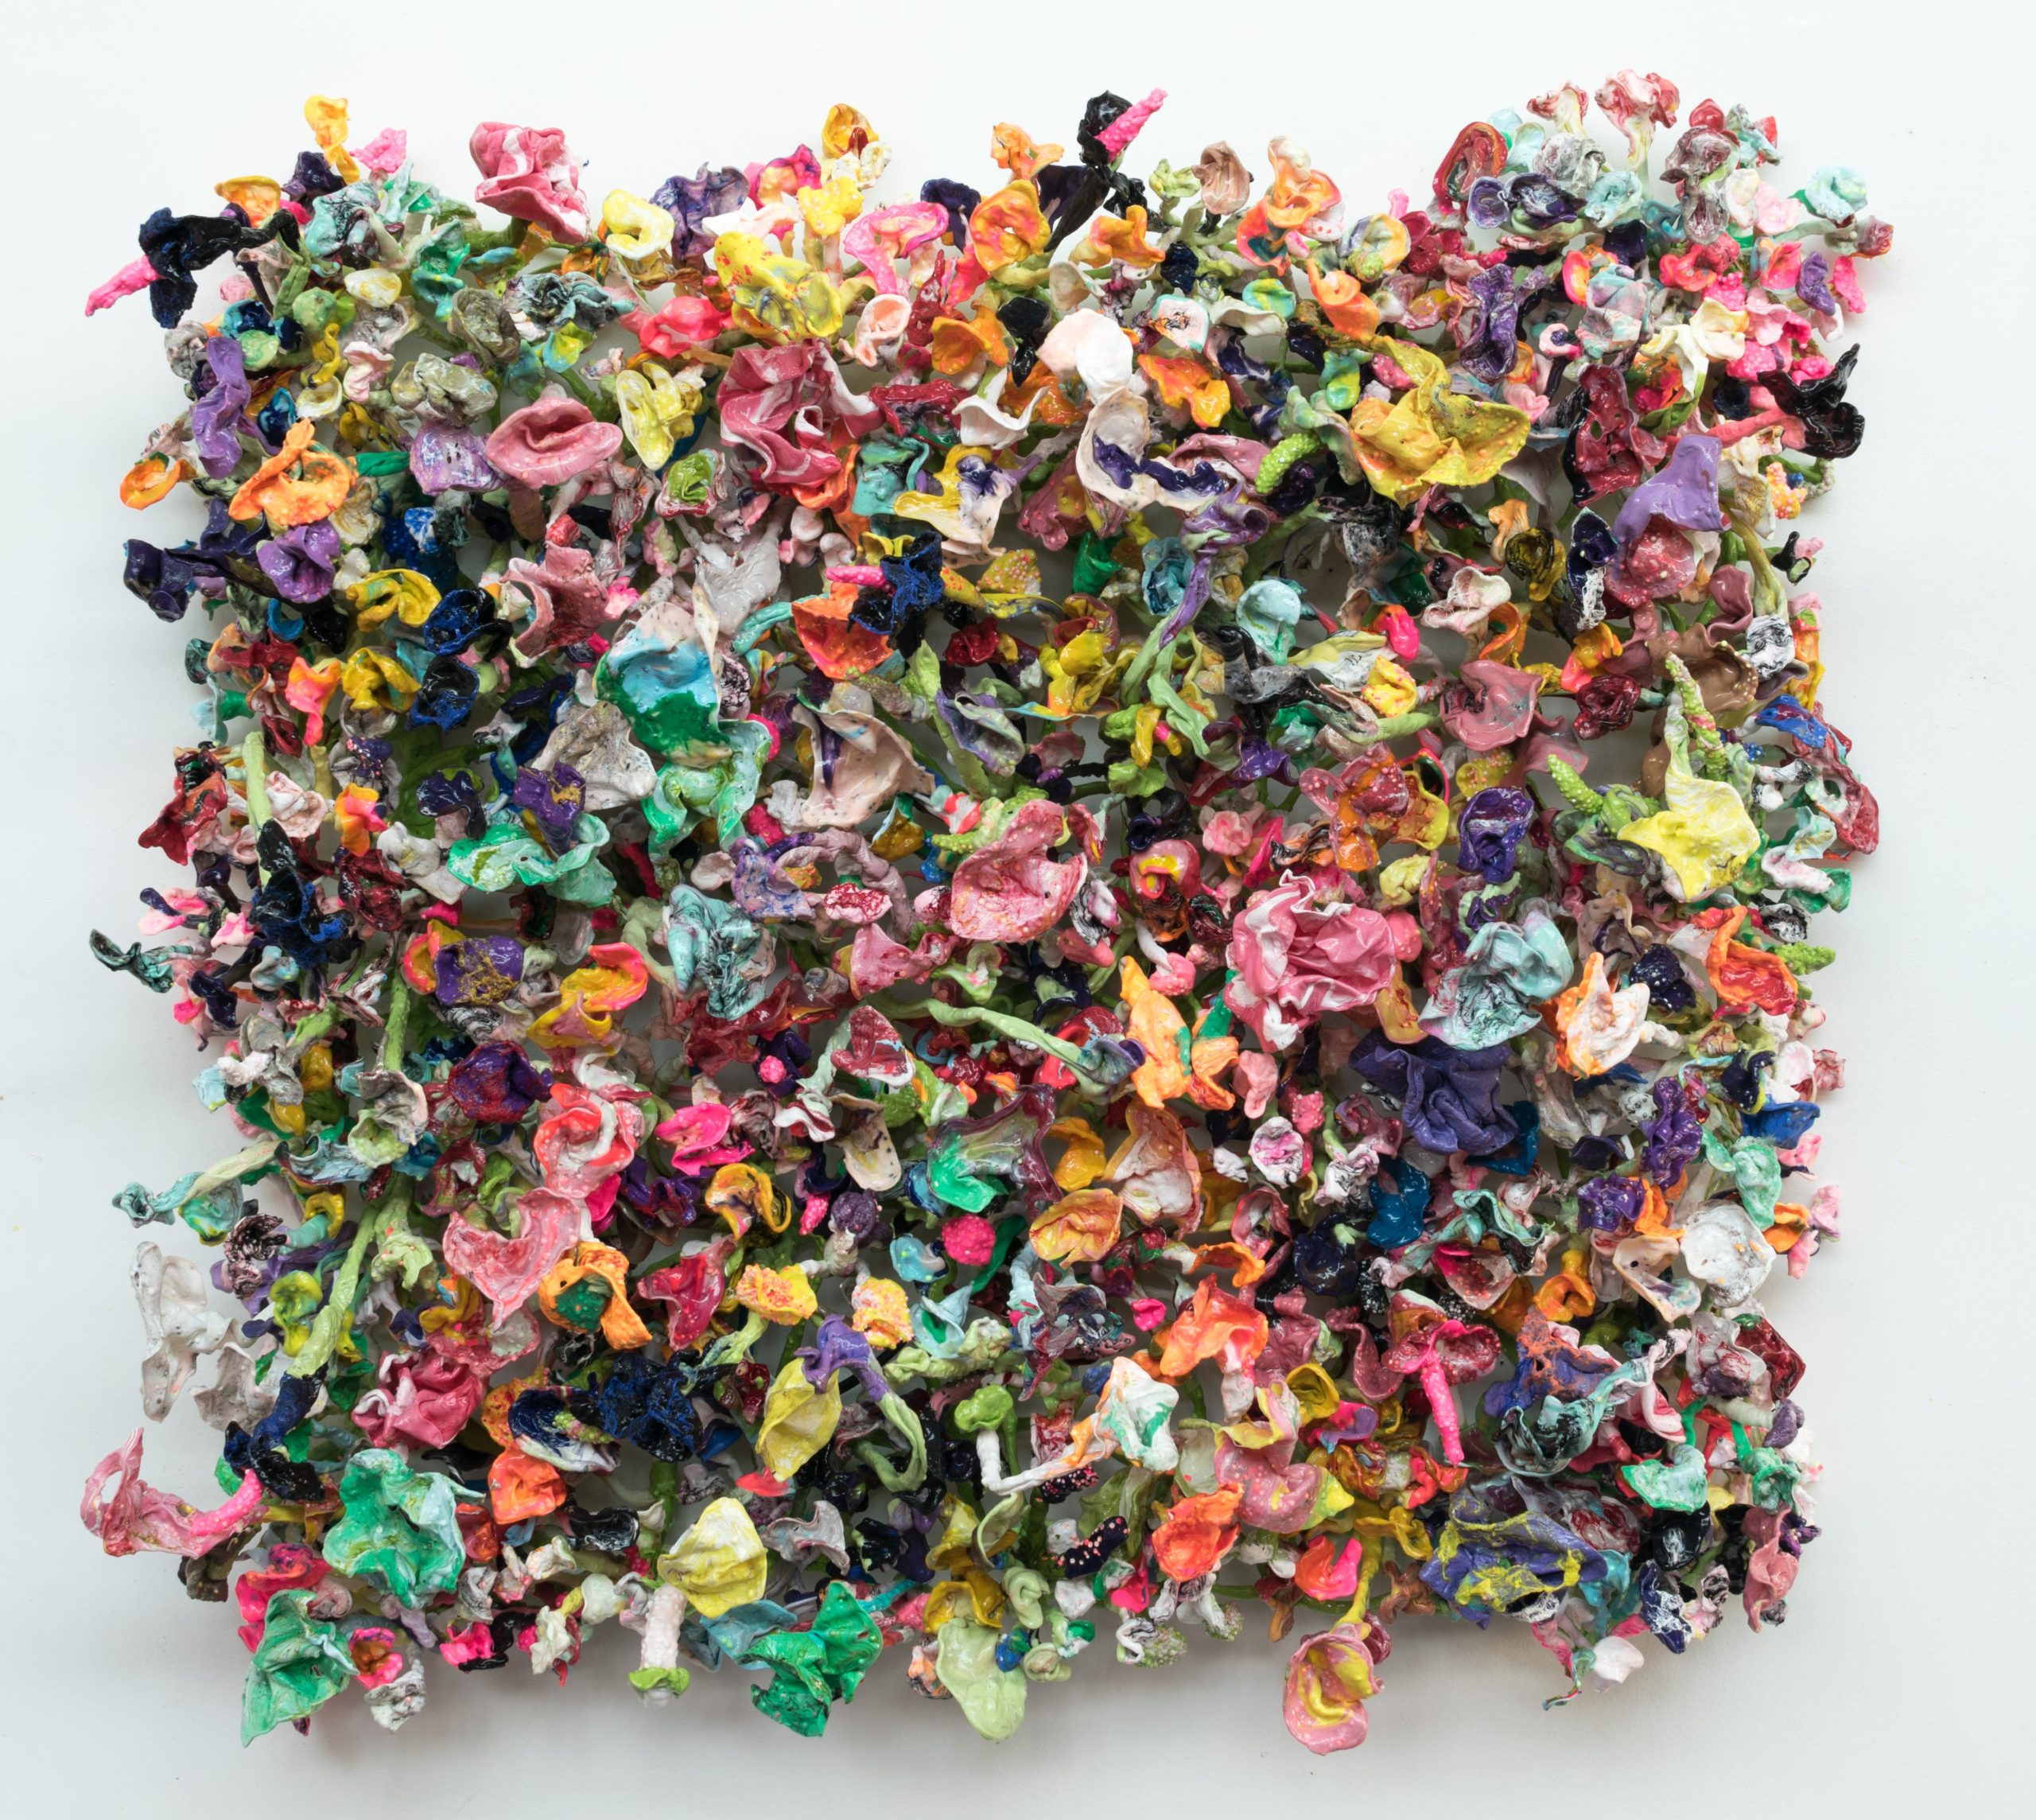 Sold - Rave the Flowers by Stefan Gross - Kroon Gallery